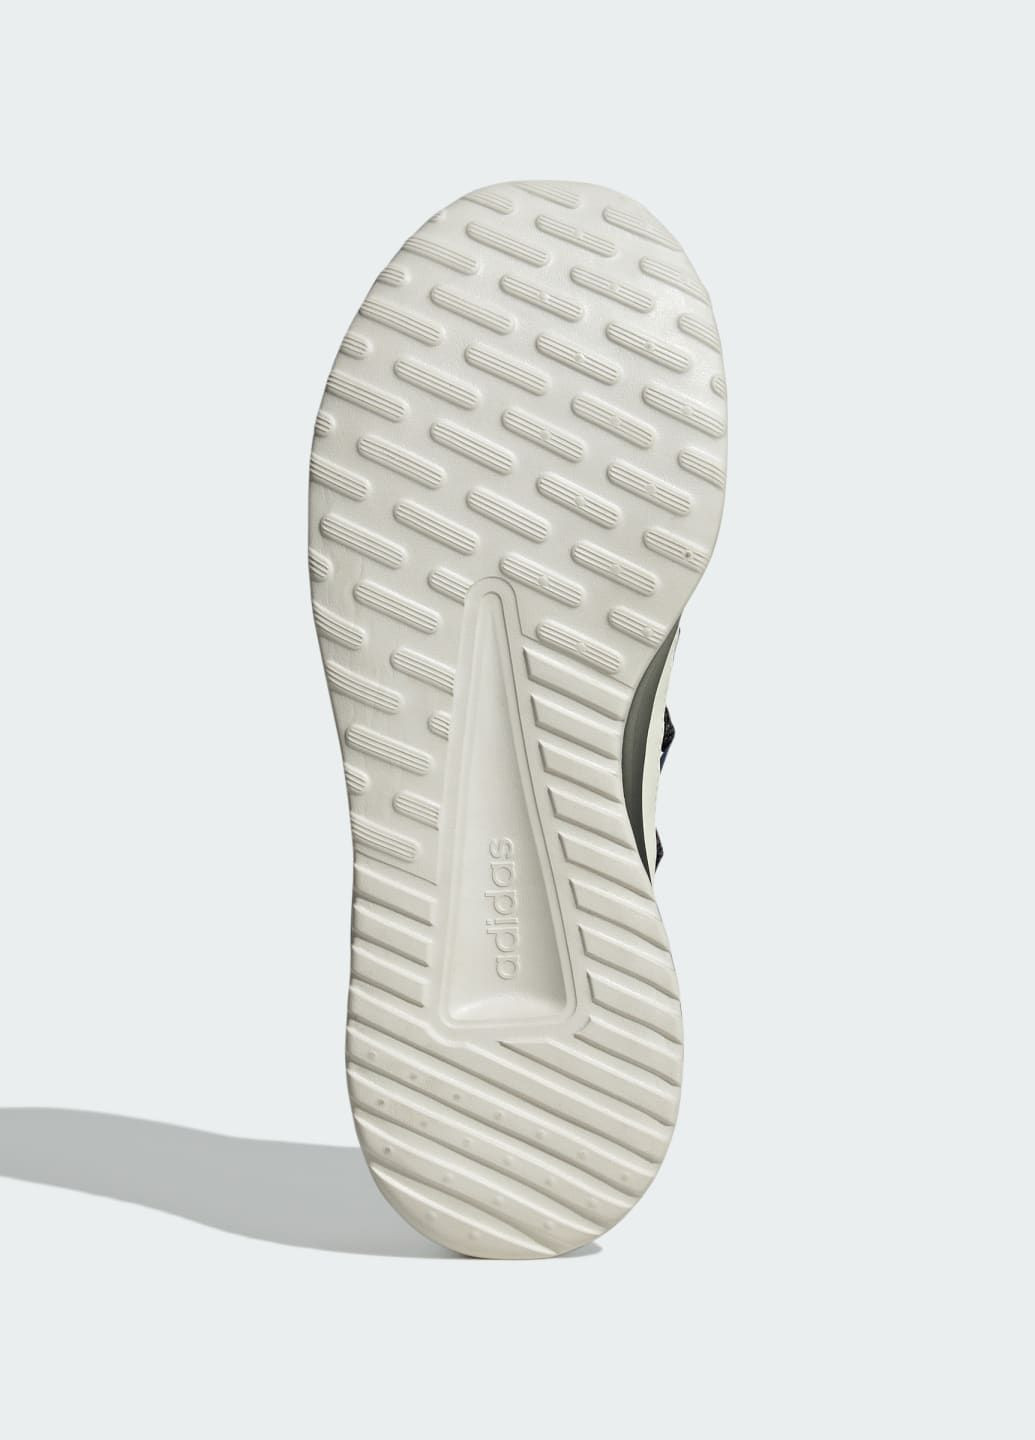 Бежевые всесезонные кроссовки lite racer adapt 4.0 cloudfoam lifestyle slip-on adidas